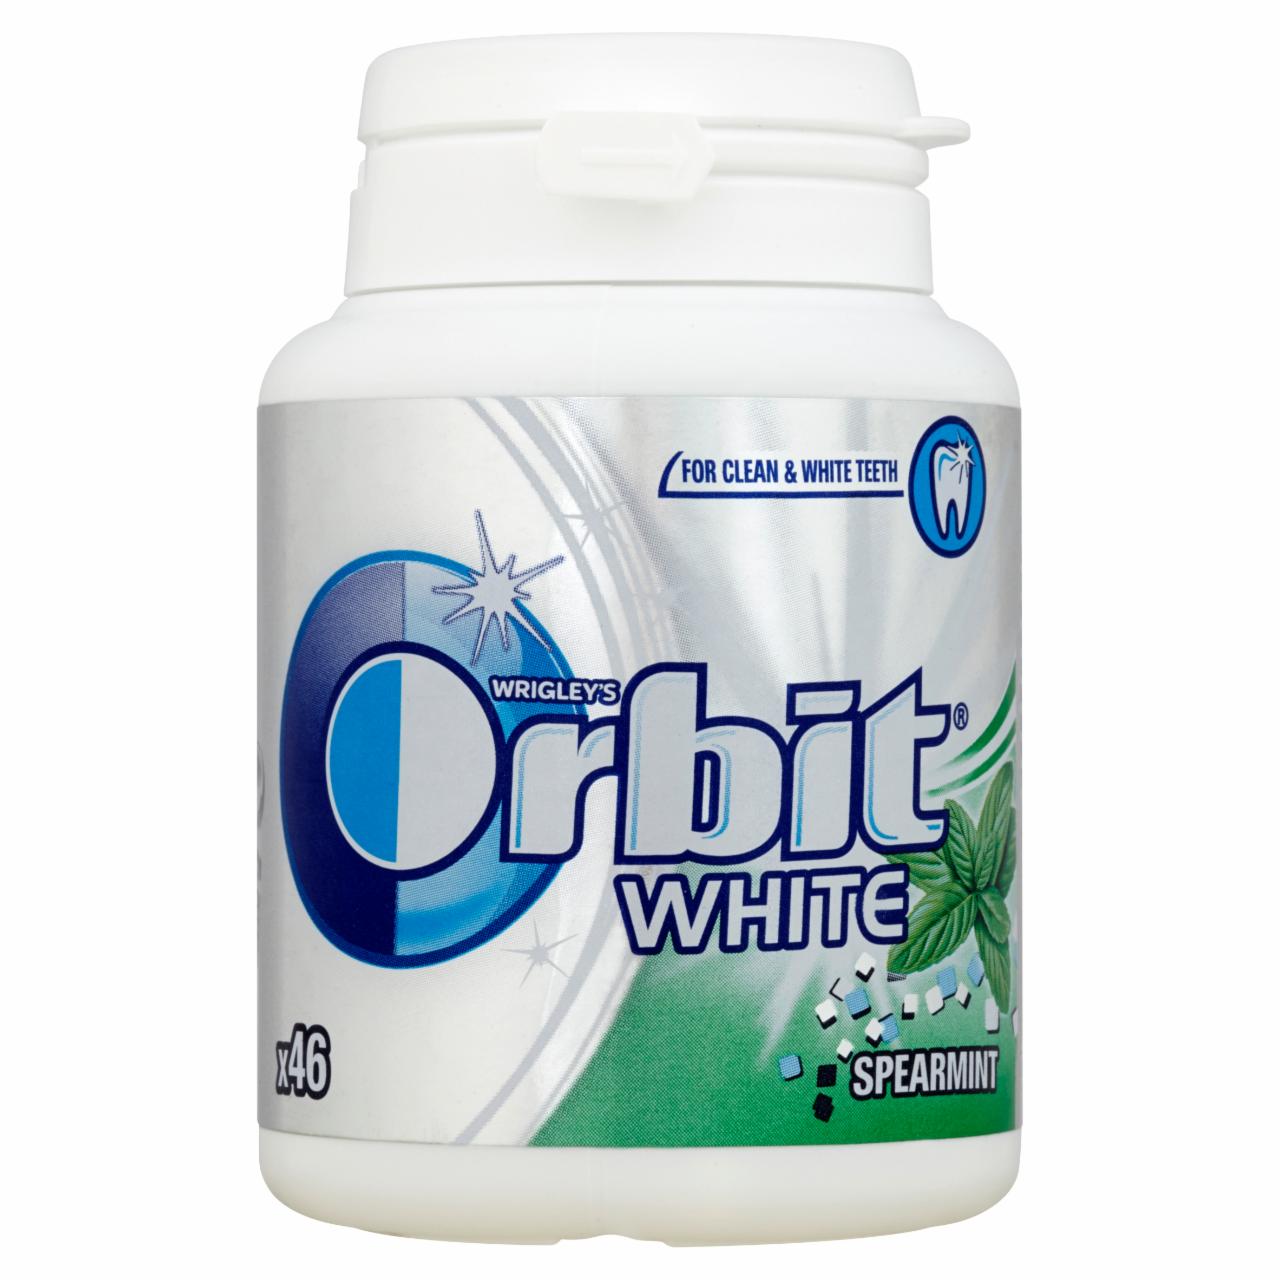 Zdjęcia - Orbit White Spearmint Guma do żucia bez cukru 64 g (46 drażetek)